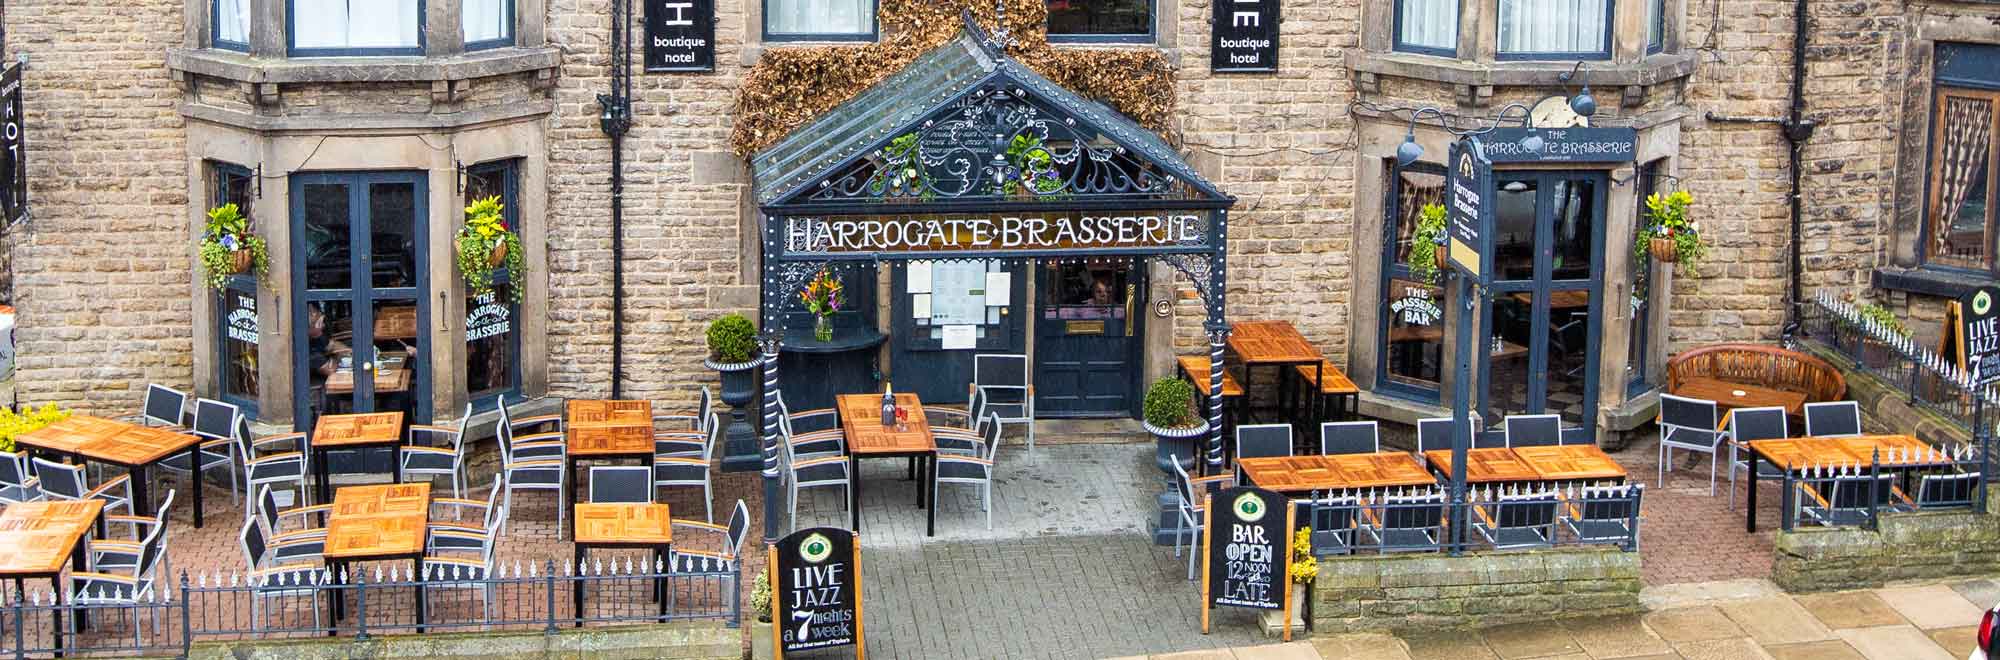 Harrogate Brasserie